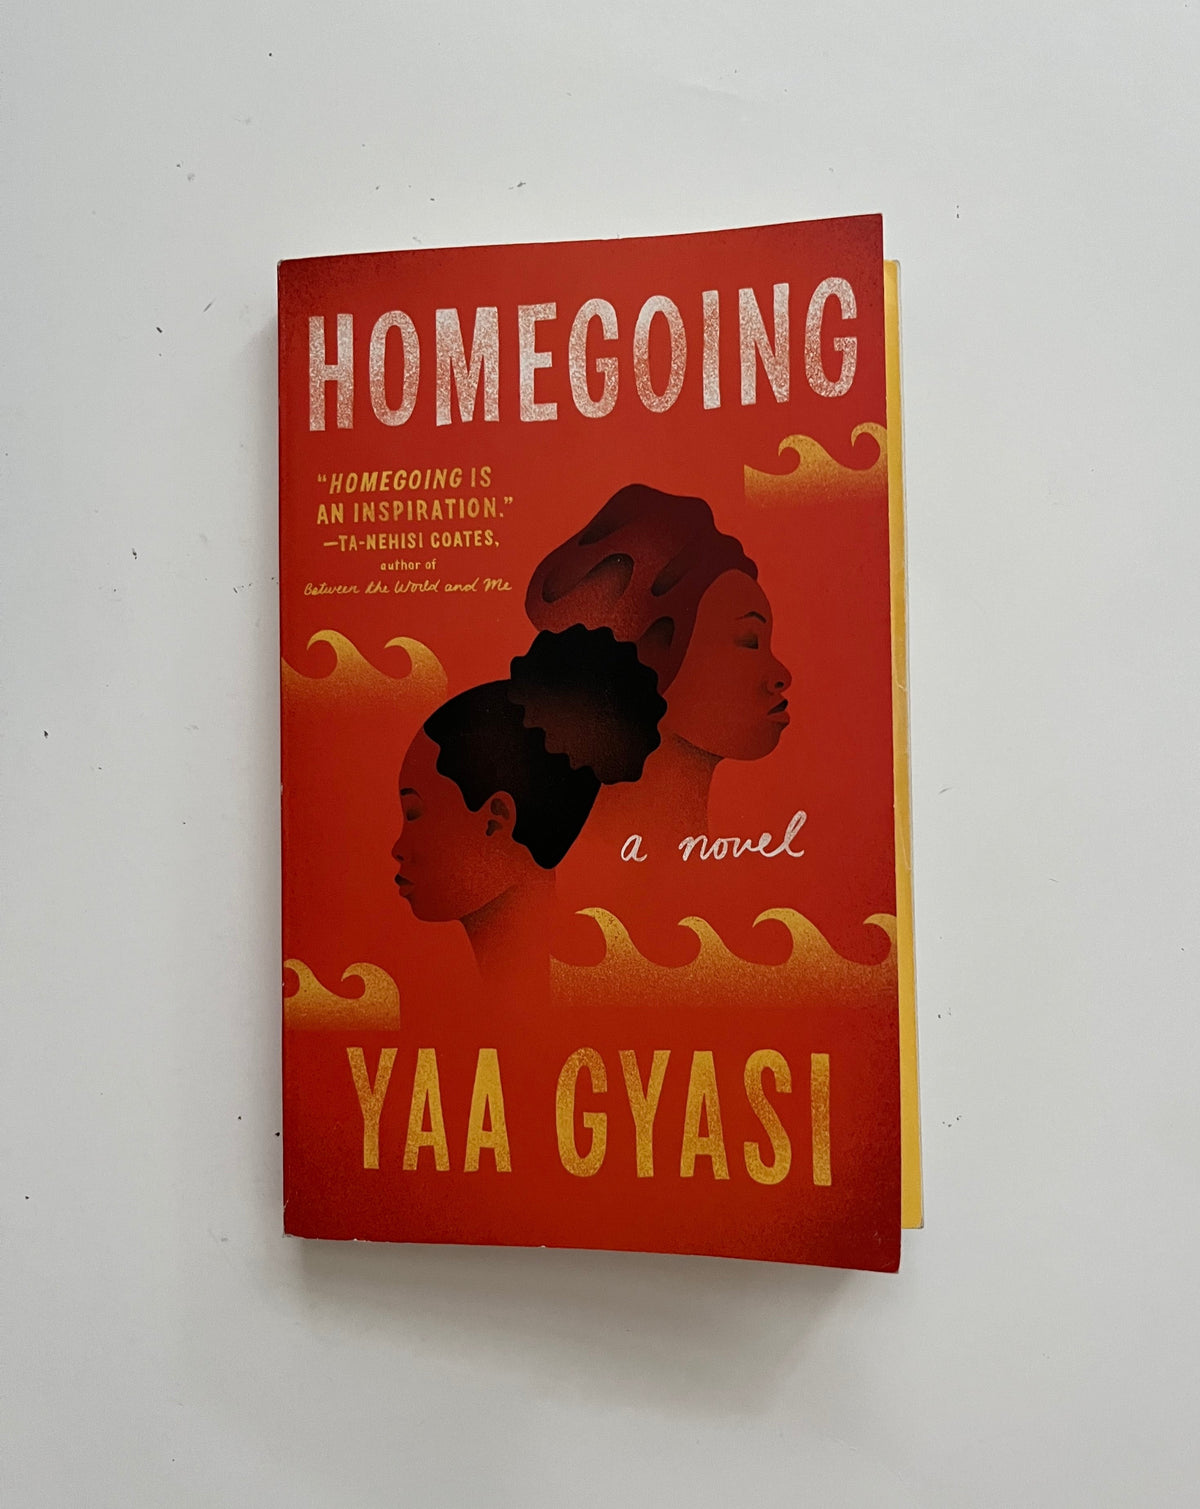 DONATE: Homegoing by Yaa Gyasi